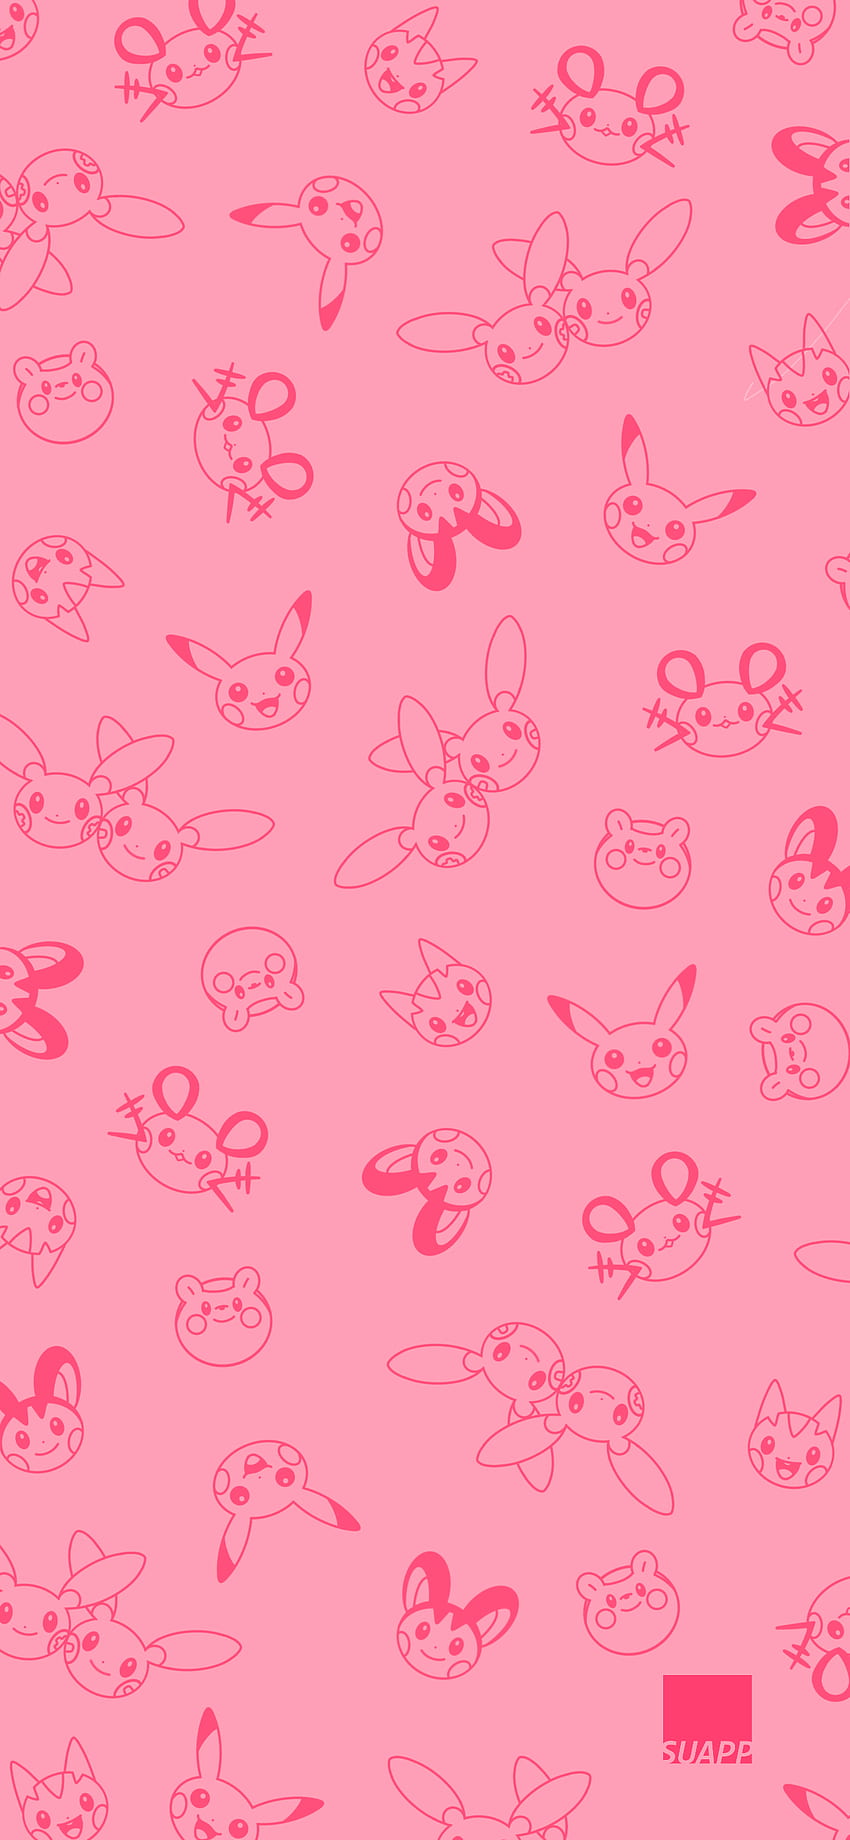 Electric Pokémon in 2020. Cute pokemon , iPhone pokemon, Pikachu, Pokémon Pink HD phone wallpaper